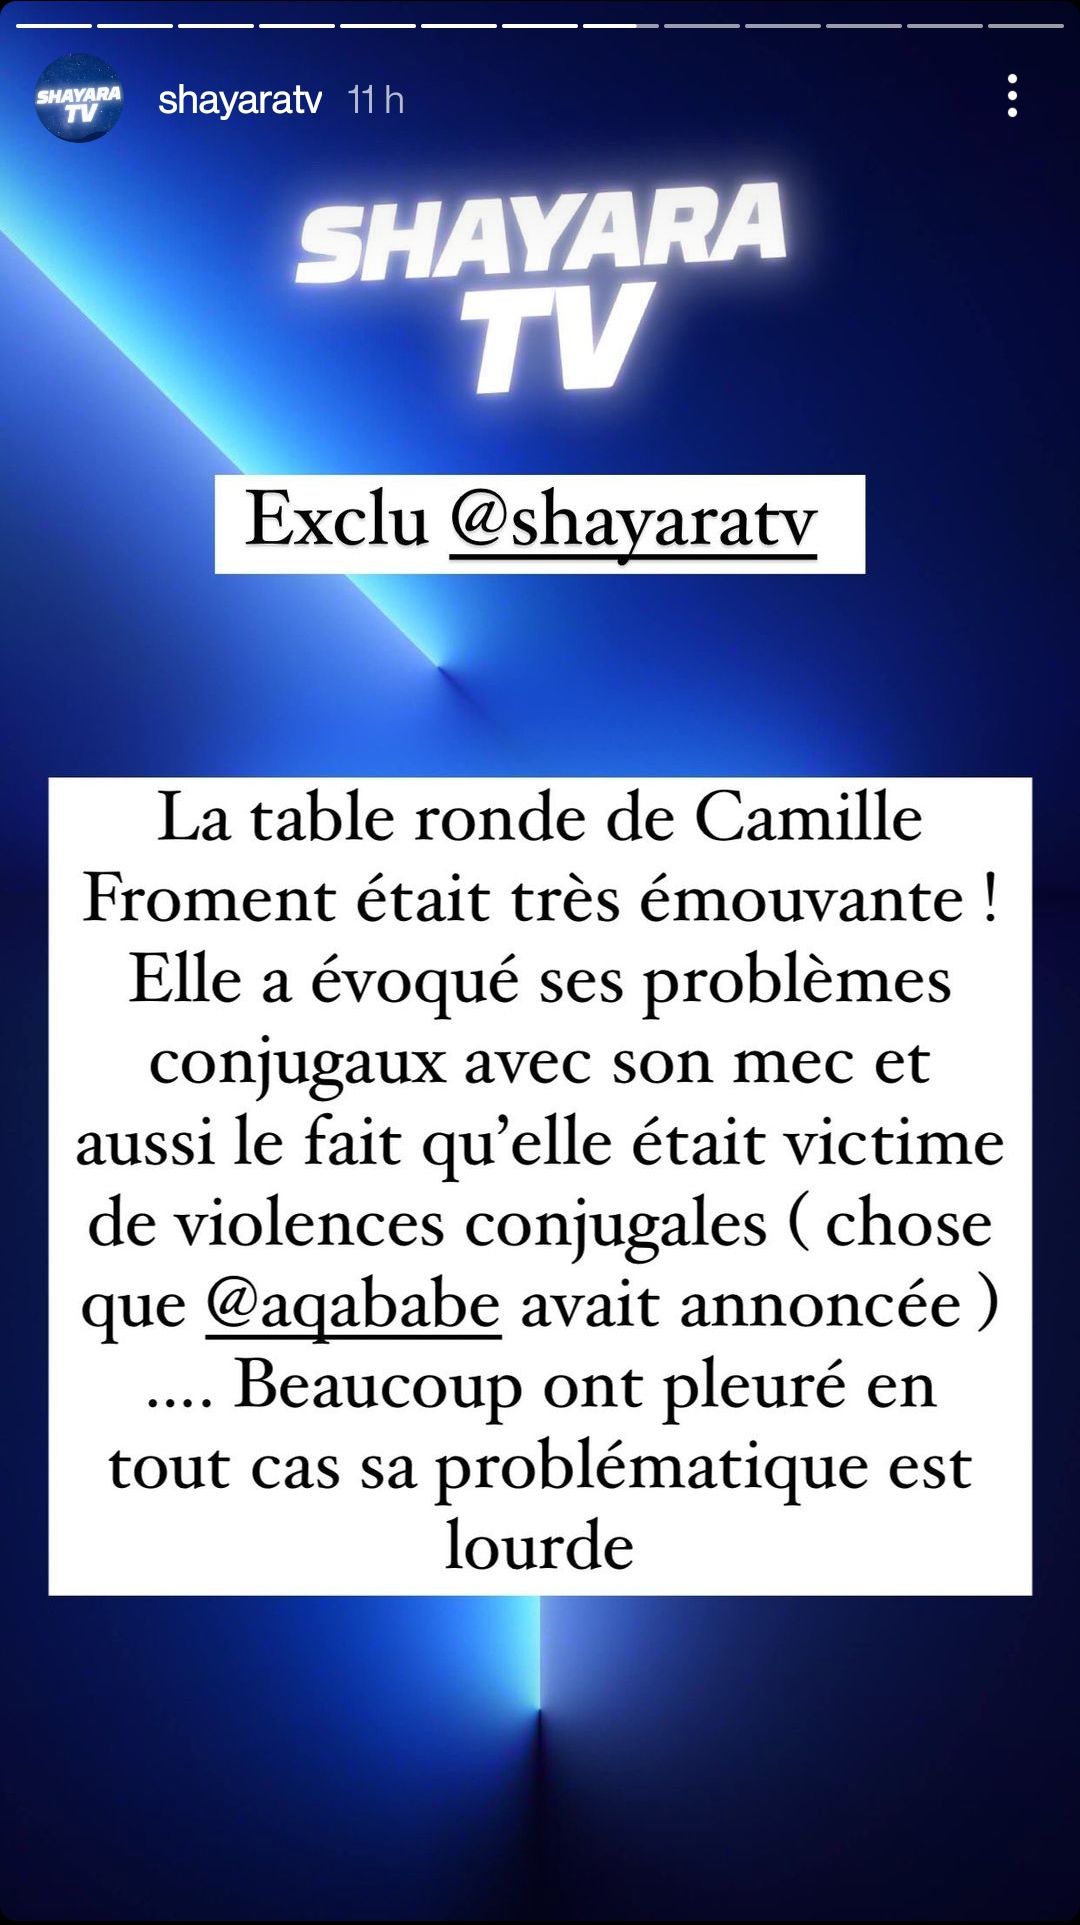  Shayara TV annonce la participation de Camille Froment à LVDCB7 @Instagram